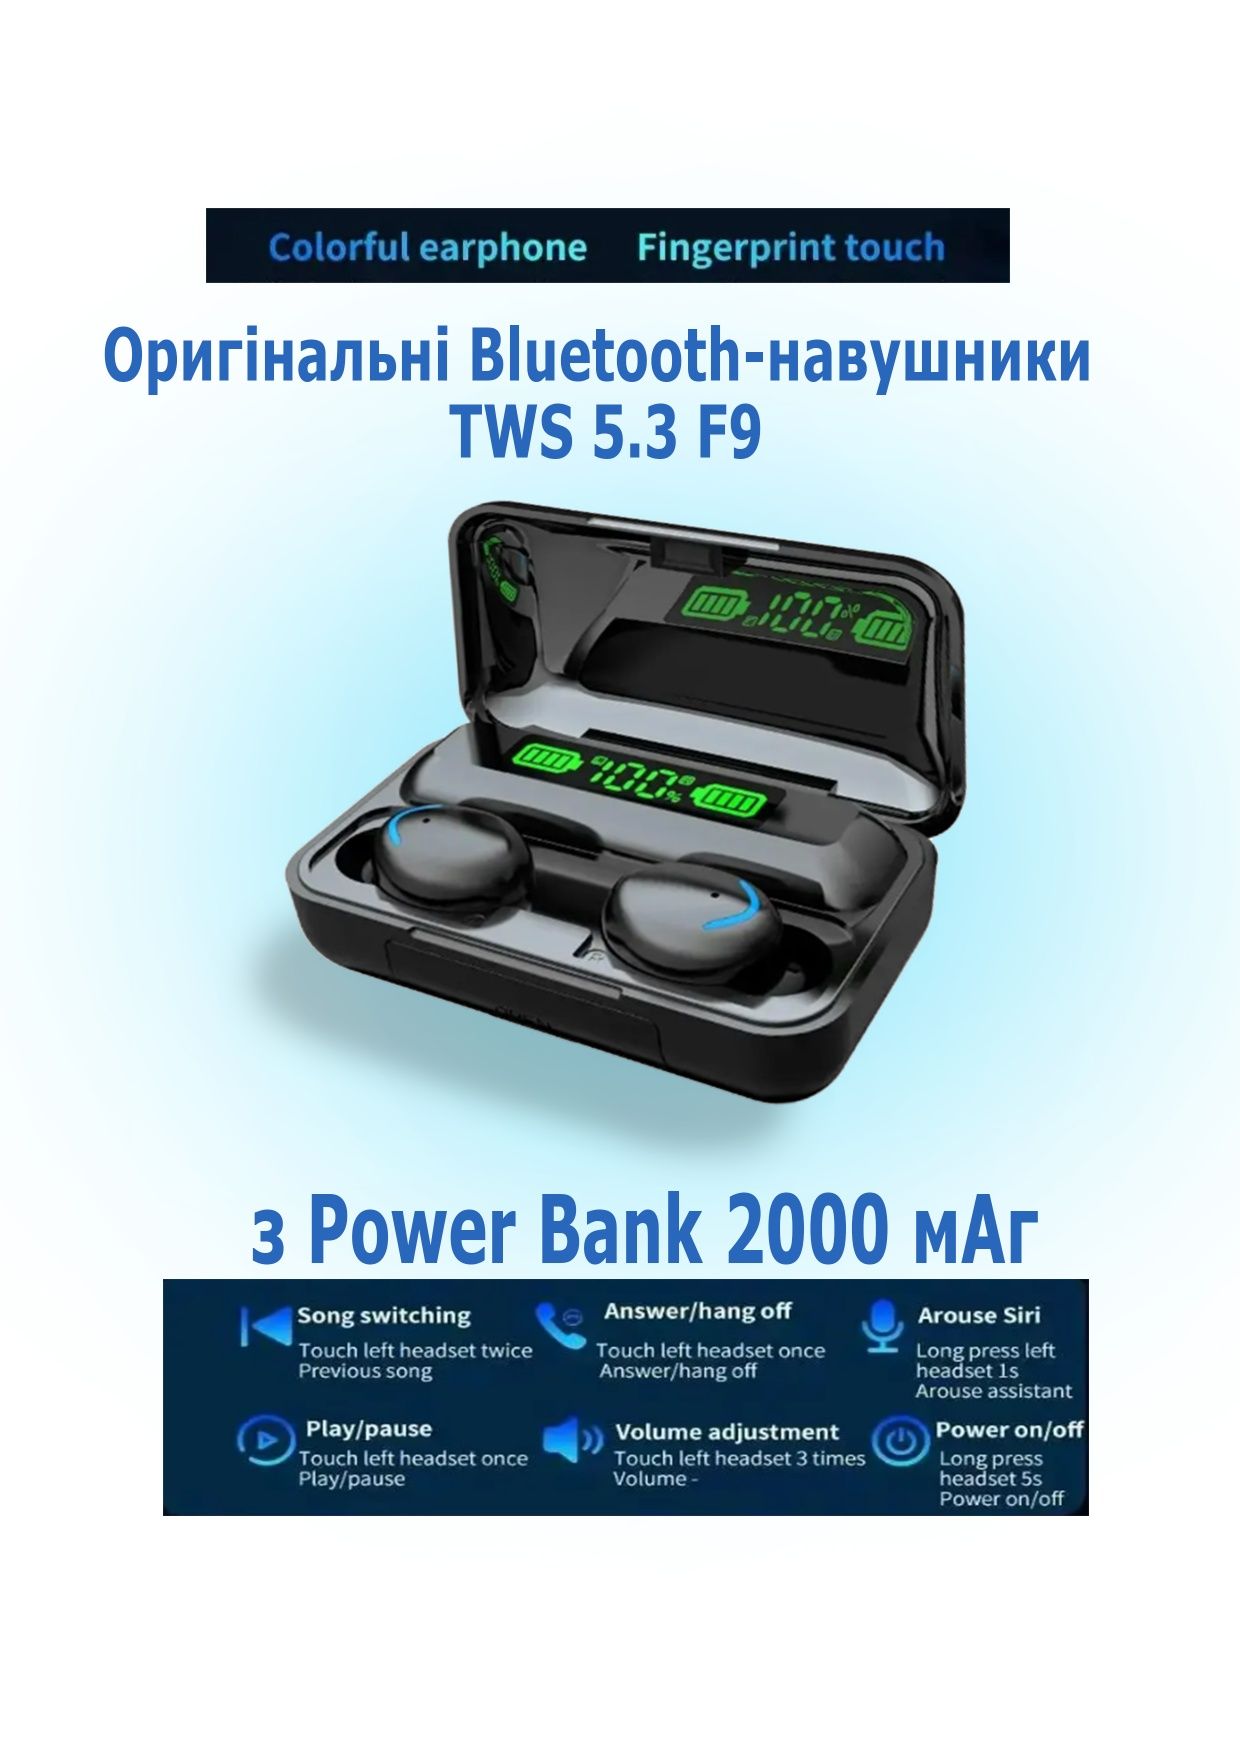 Оригінальні Bluetooth-навушники TWS 5.3 F9
з Power Bank 2000 мАг